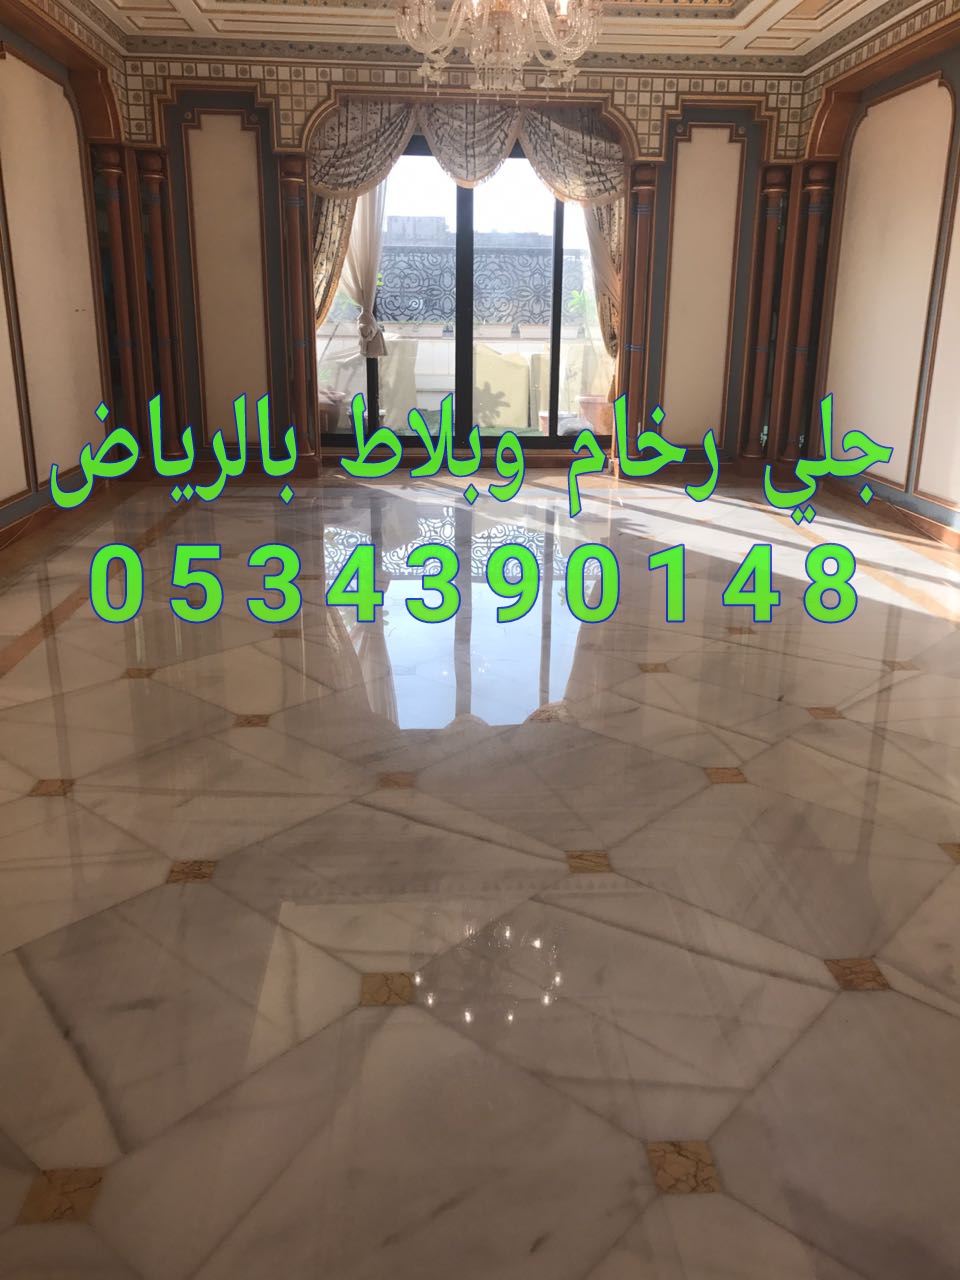 جلي رخام في الرياض من شركة الجوهرة 0534390148 اسعار جلي بلاط ورخام في الرياض P_11486wjlw0